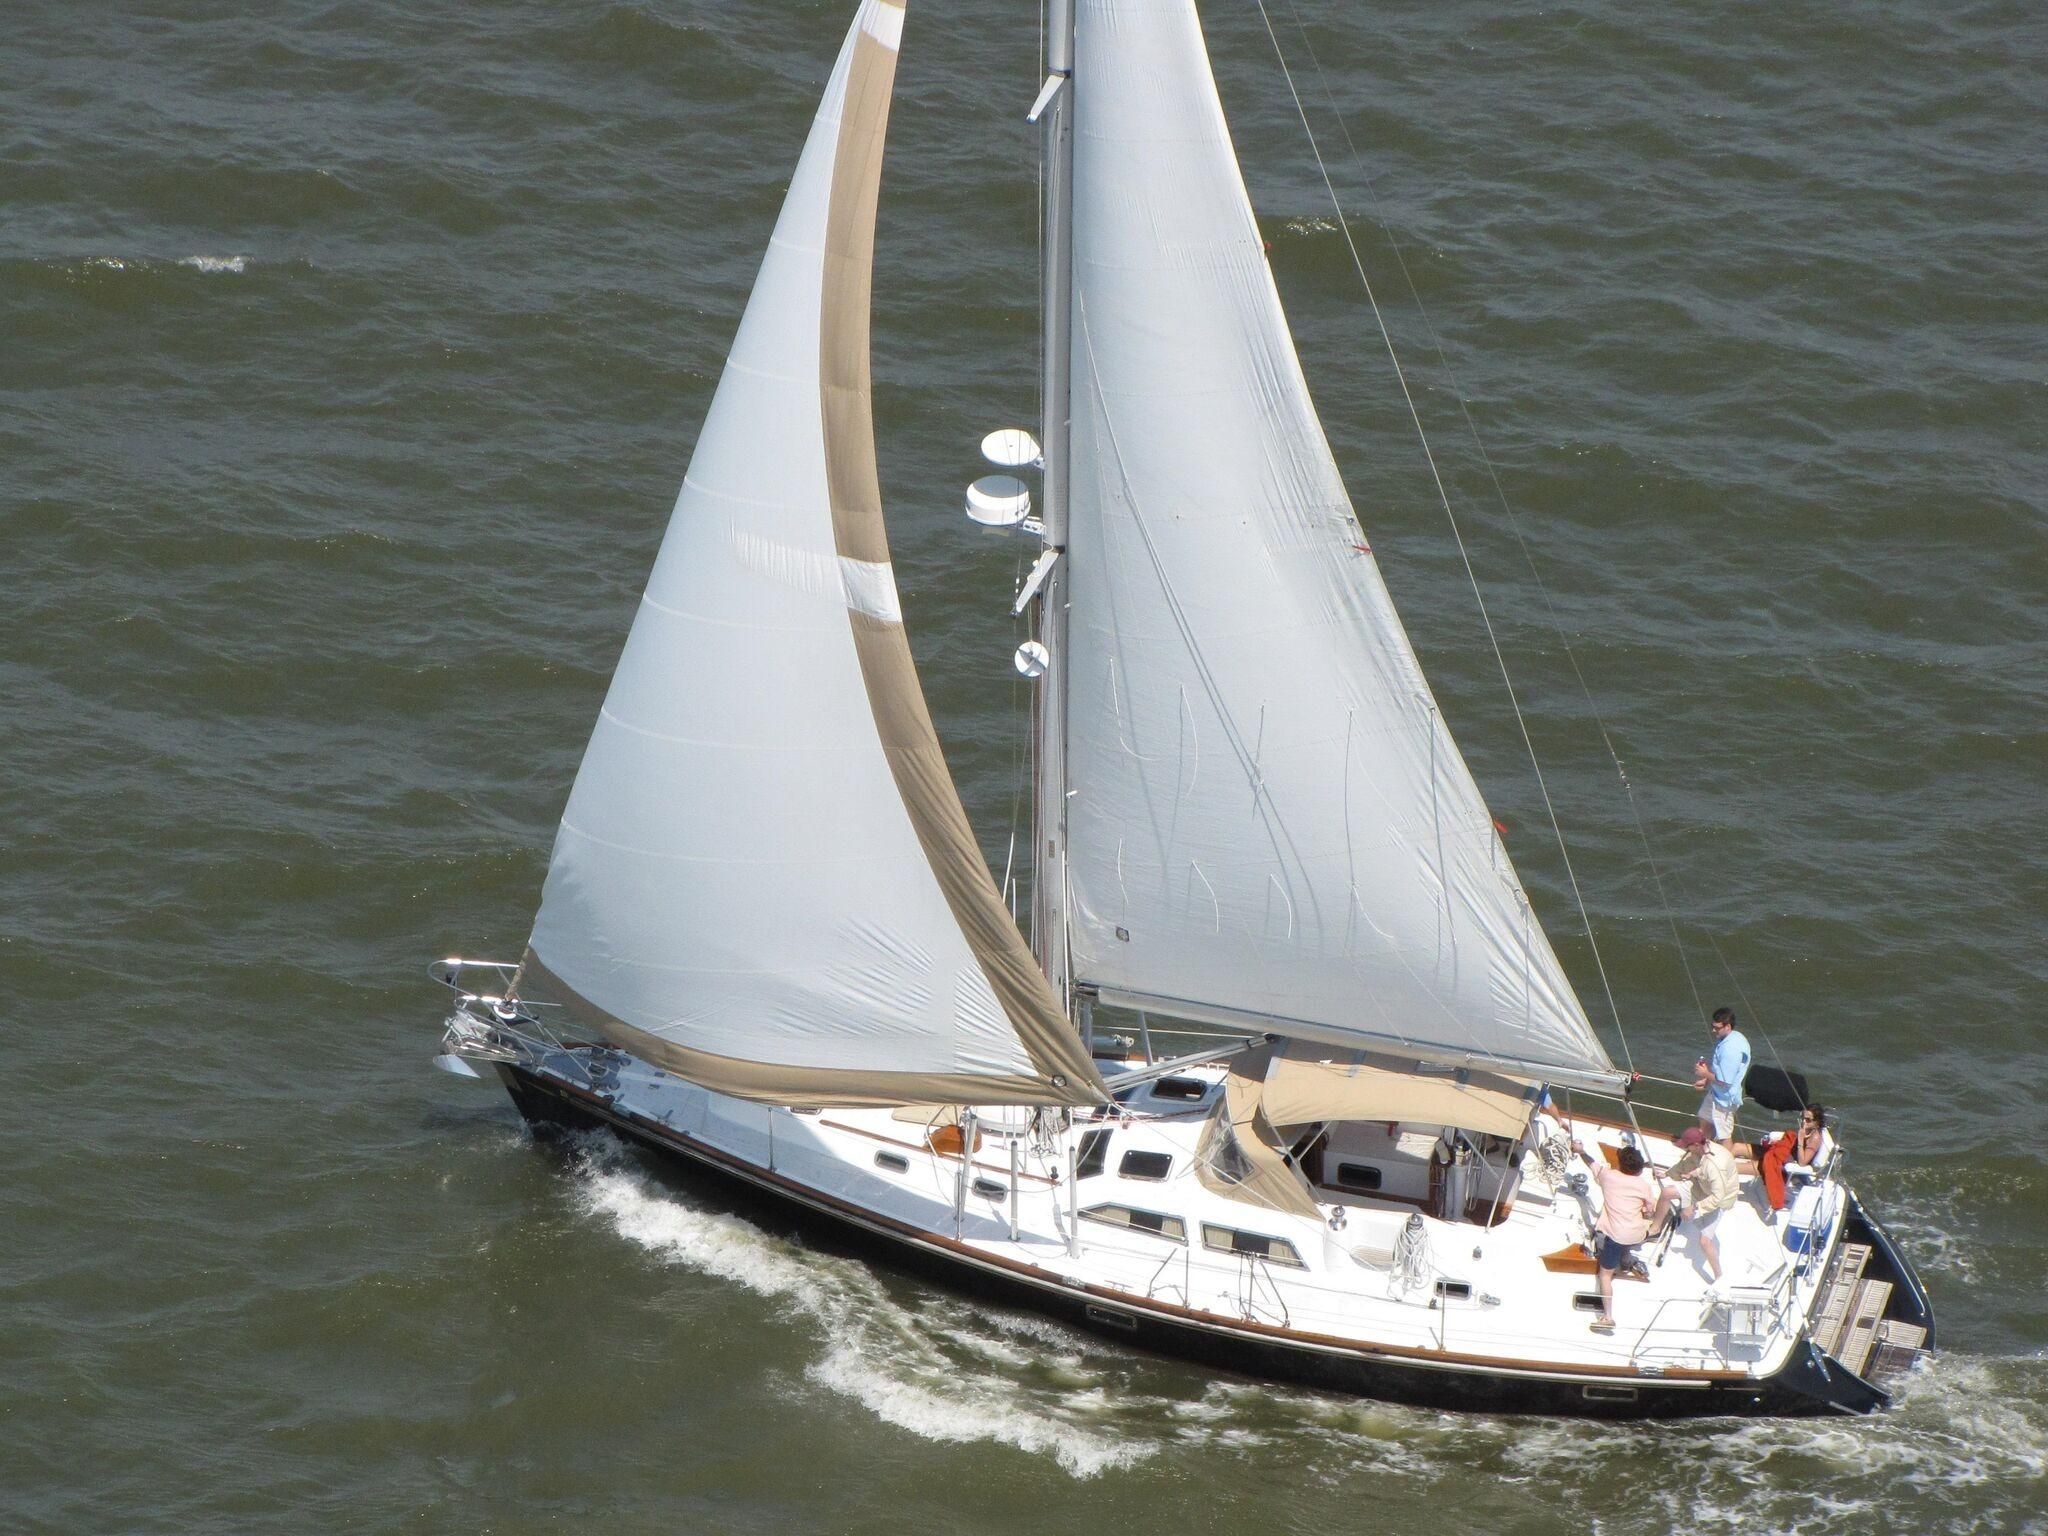 2019 hylas h46 sail boat for sale - www.yachtworld.com